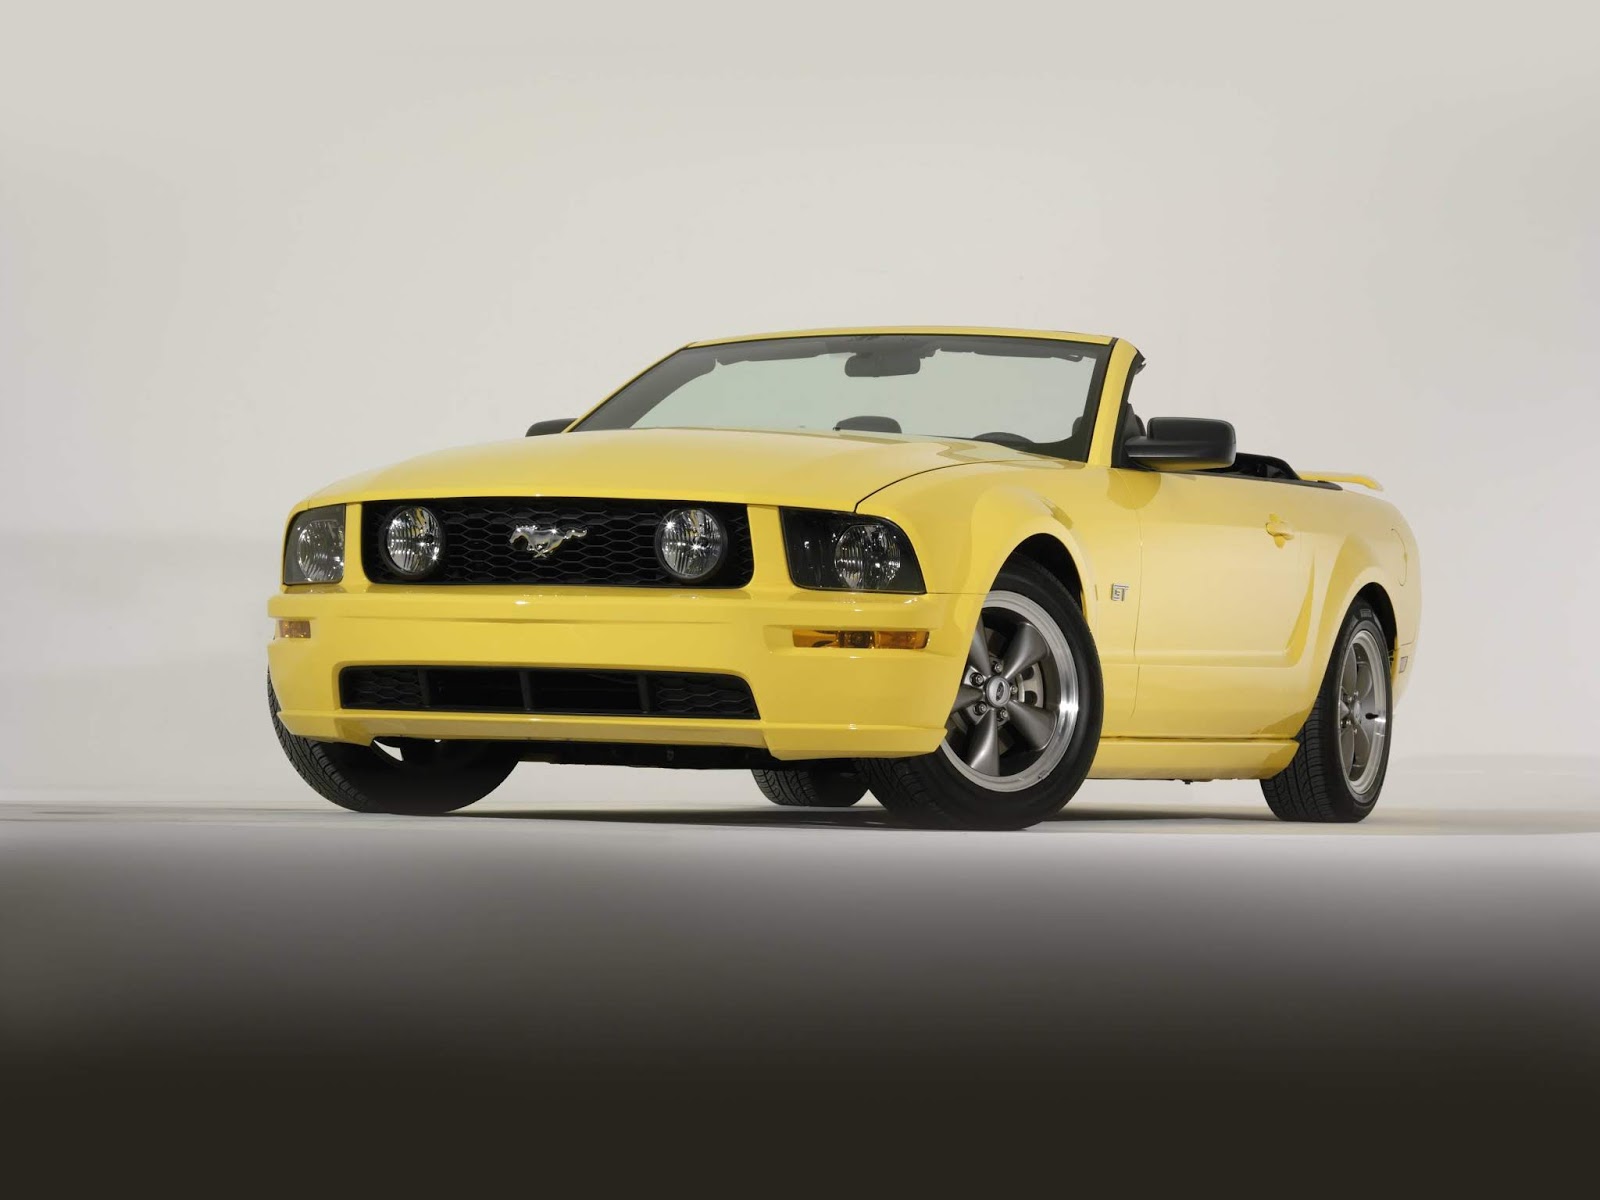 2005 Ford Mustang GT convertible 1 Πώς γιορτάζει η Mustang τα 55 της χρόνια;